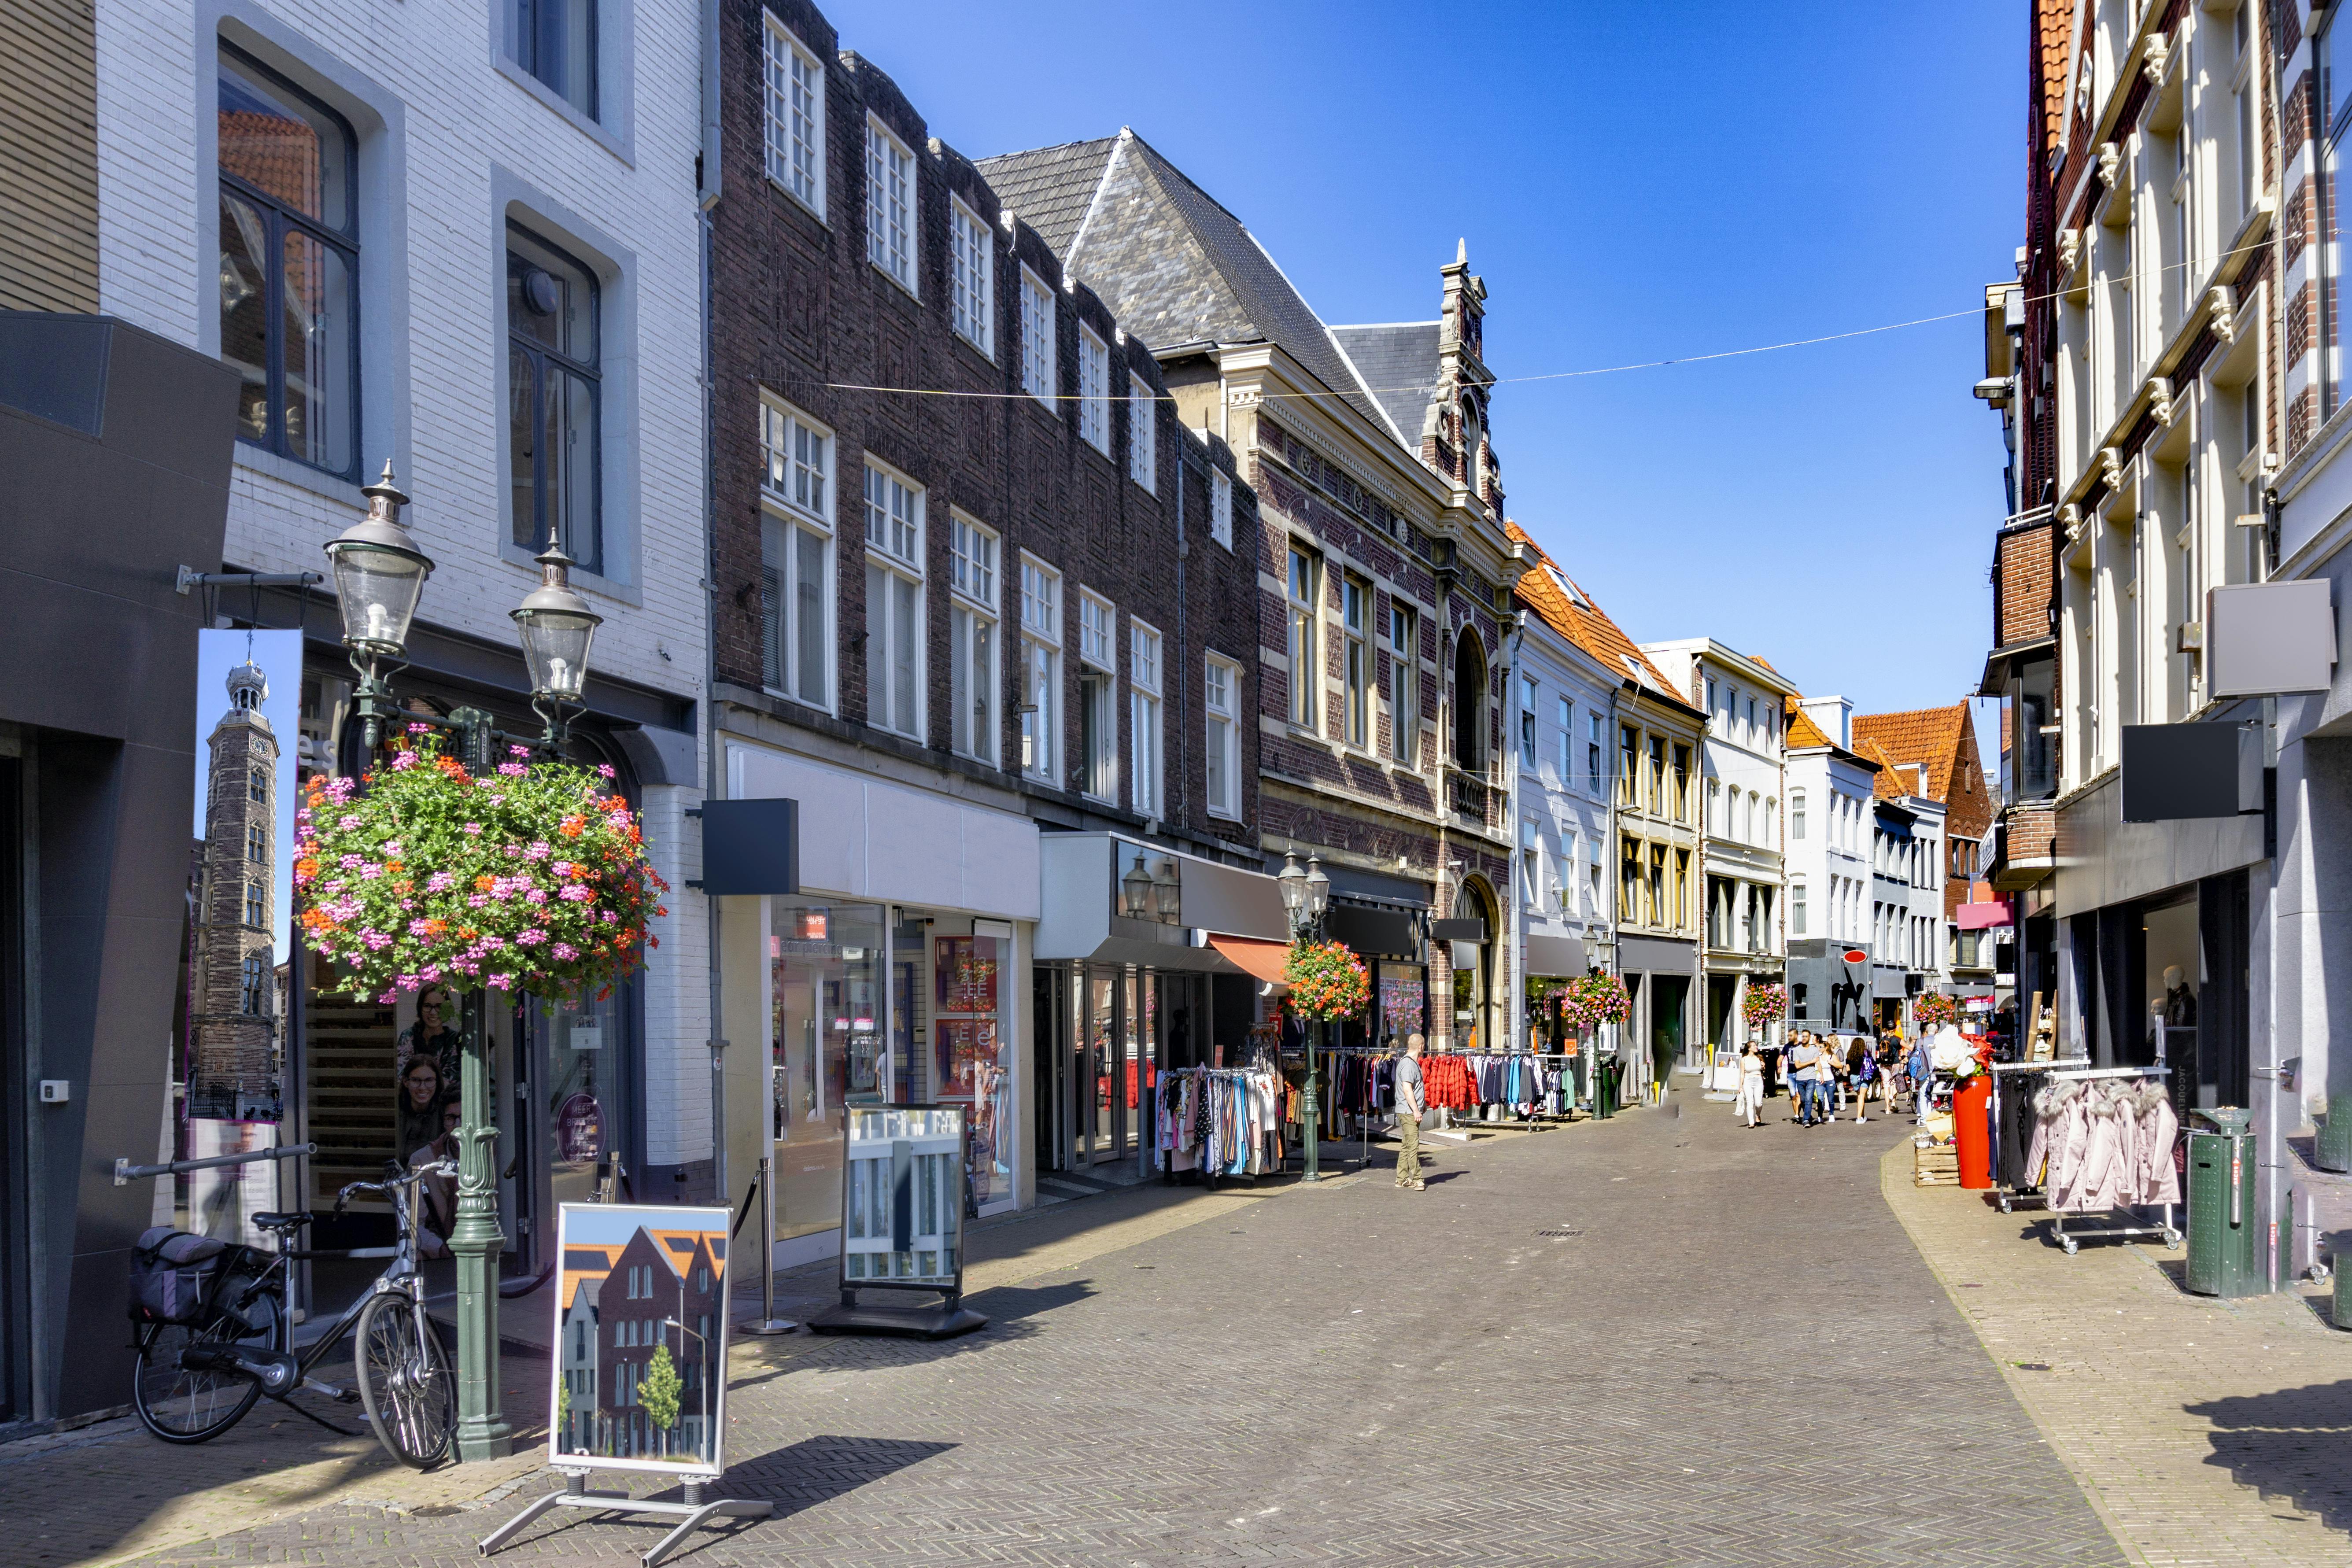 Smart wandeling in Venlo met een interactief stadsspel